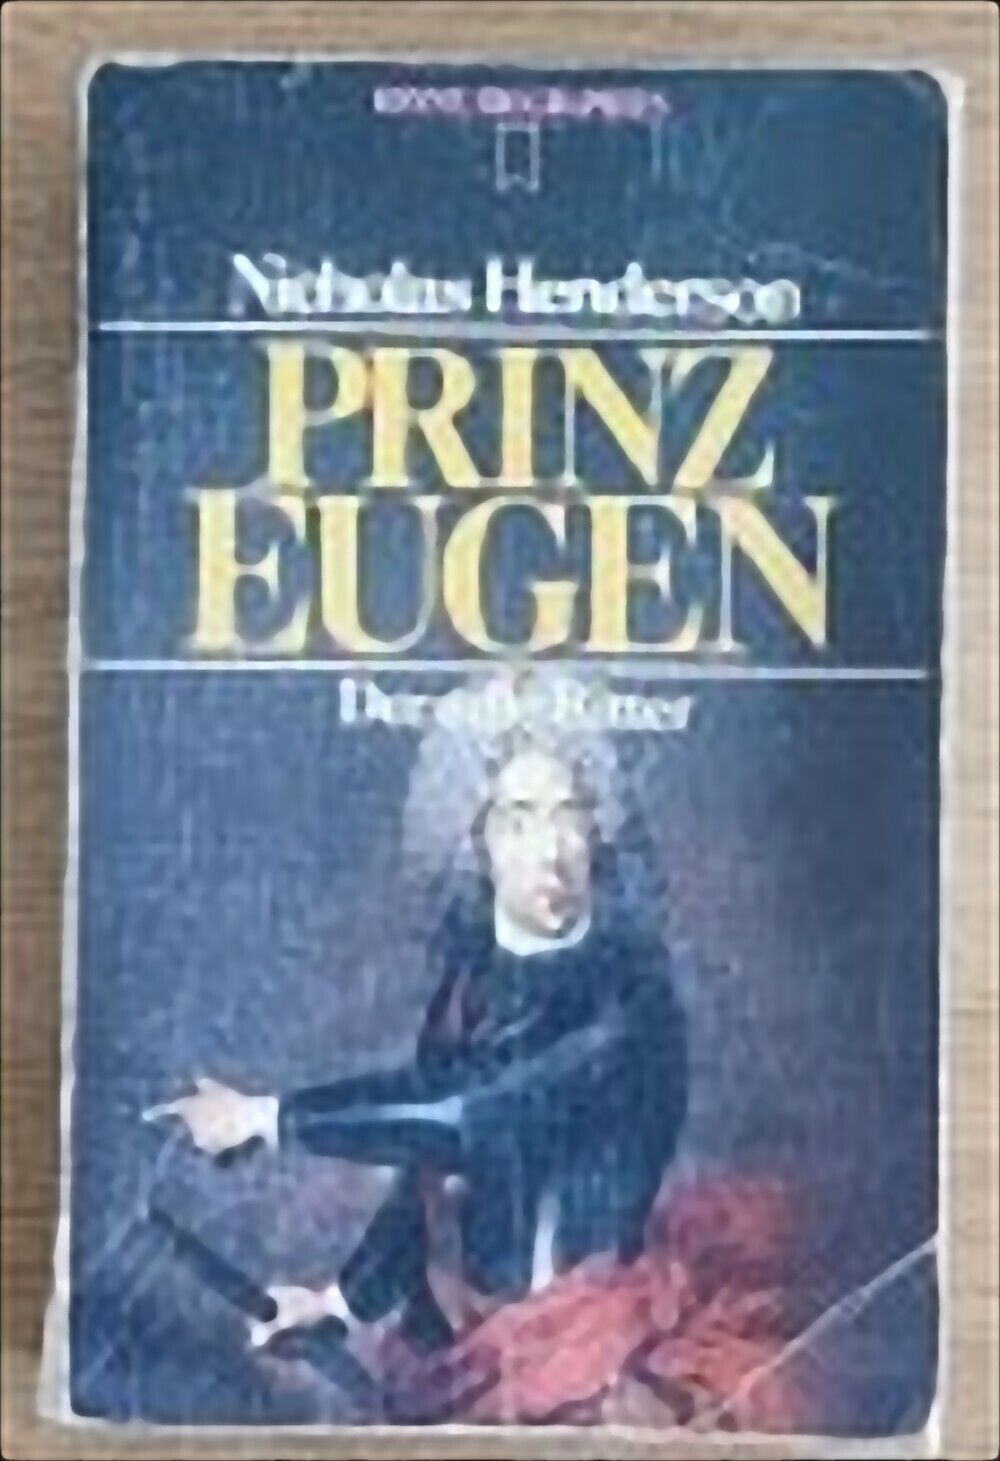 Prinz eugen - N. Henderson - Heyne Verlag - 1986 - AR